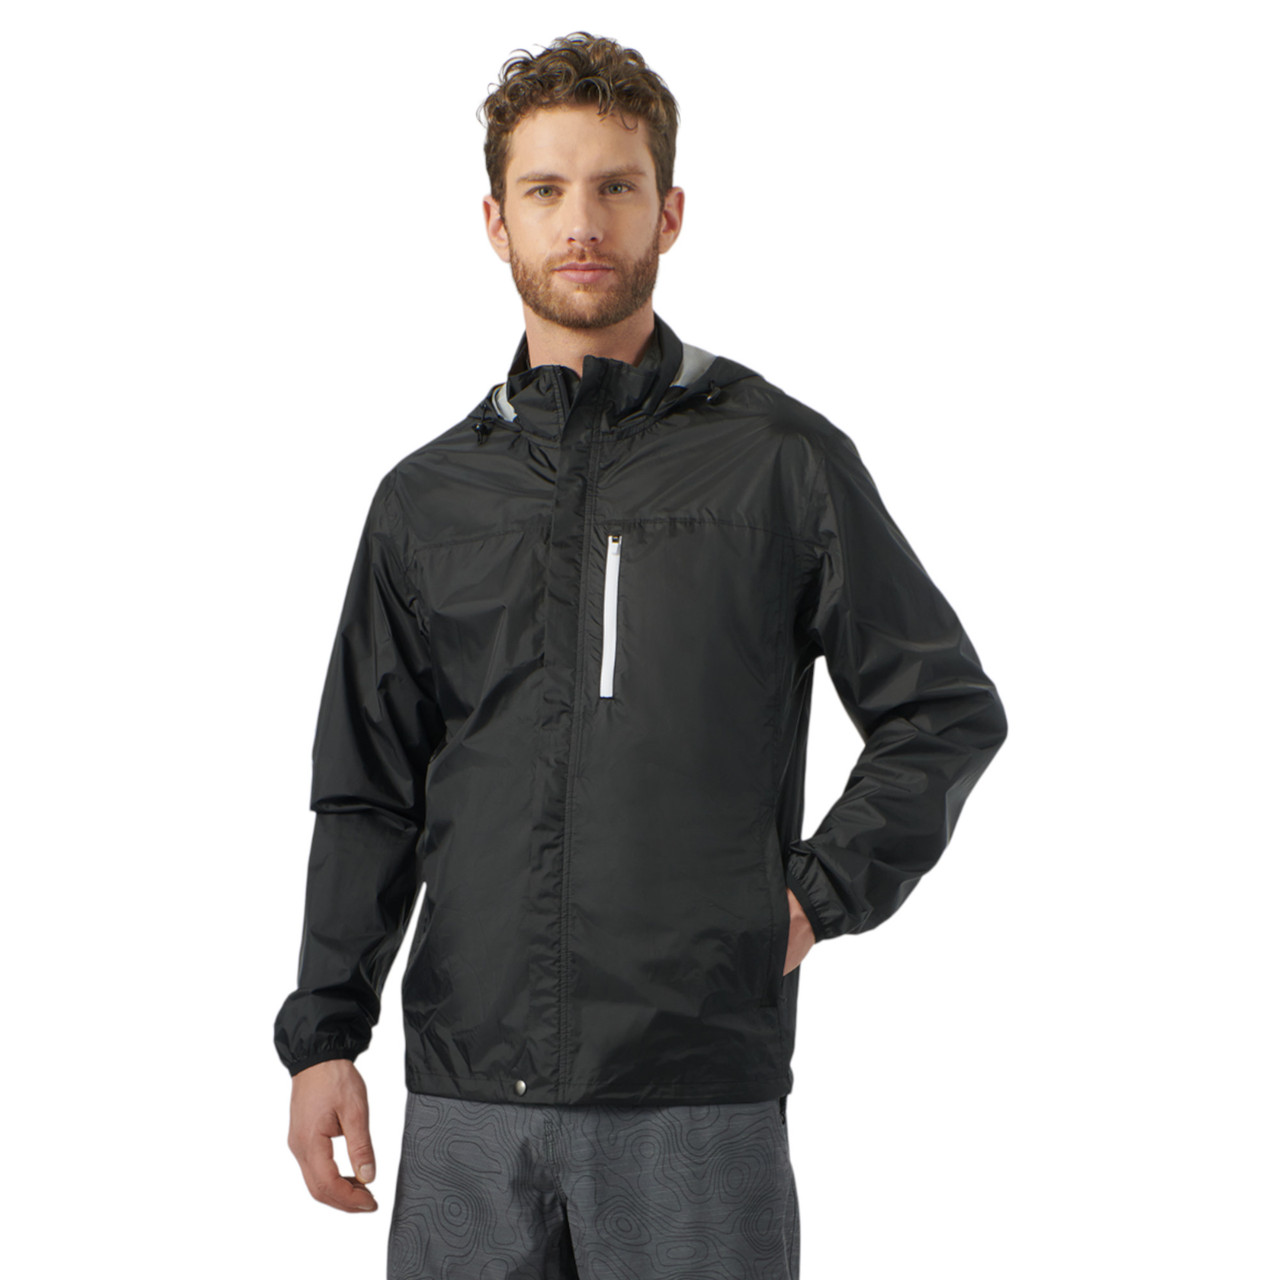 Sea-Doo New OEM, Men's Medium Water-Resistant Windproof Jacket, 4547000690